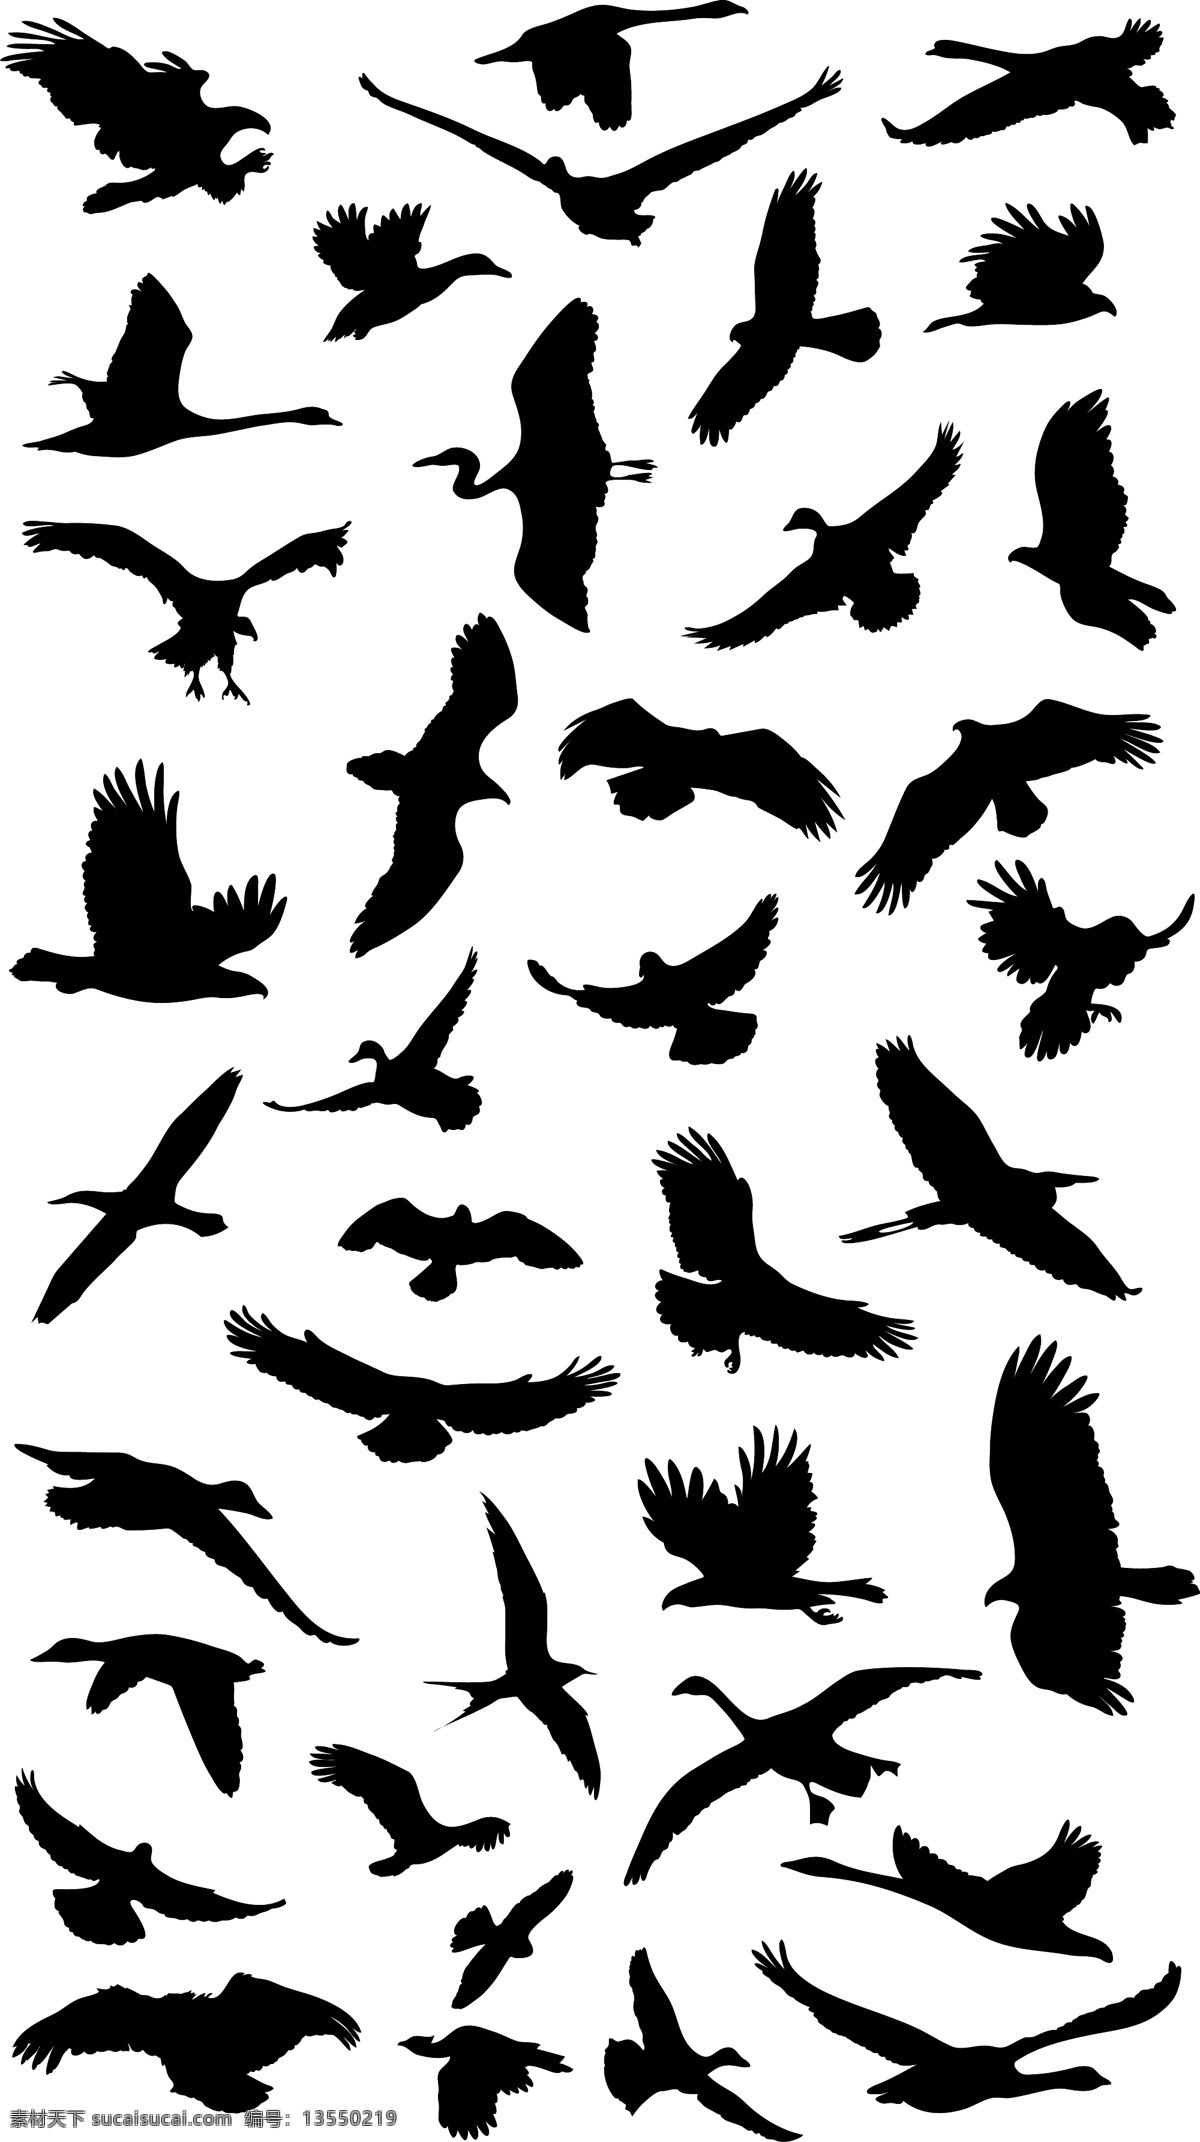 飞行 鸟类 剪影 矢量 图形 web 包 创意 高分辨率 海鸥 接口 免费 时尚的 现代的 独特的 原始的 质量 新鲜的 设计新的 清洁 hd 元素 用户界面 ui元素 详细的 人工智能 病 媒 生物 鹰 鸭 起重机 苍鹭 集 向量 矢量图